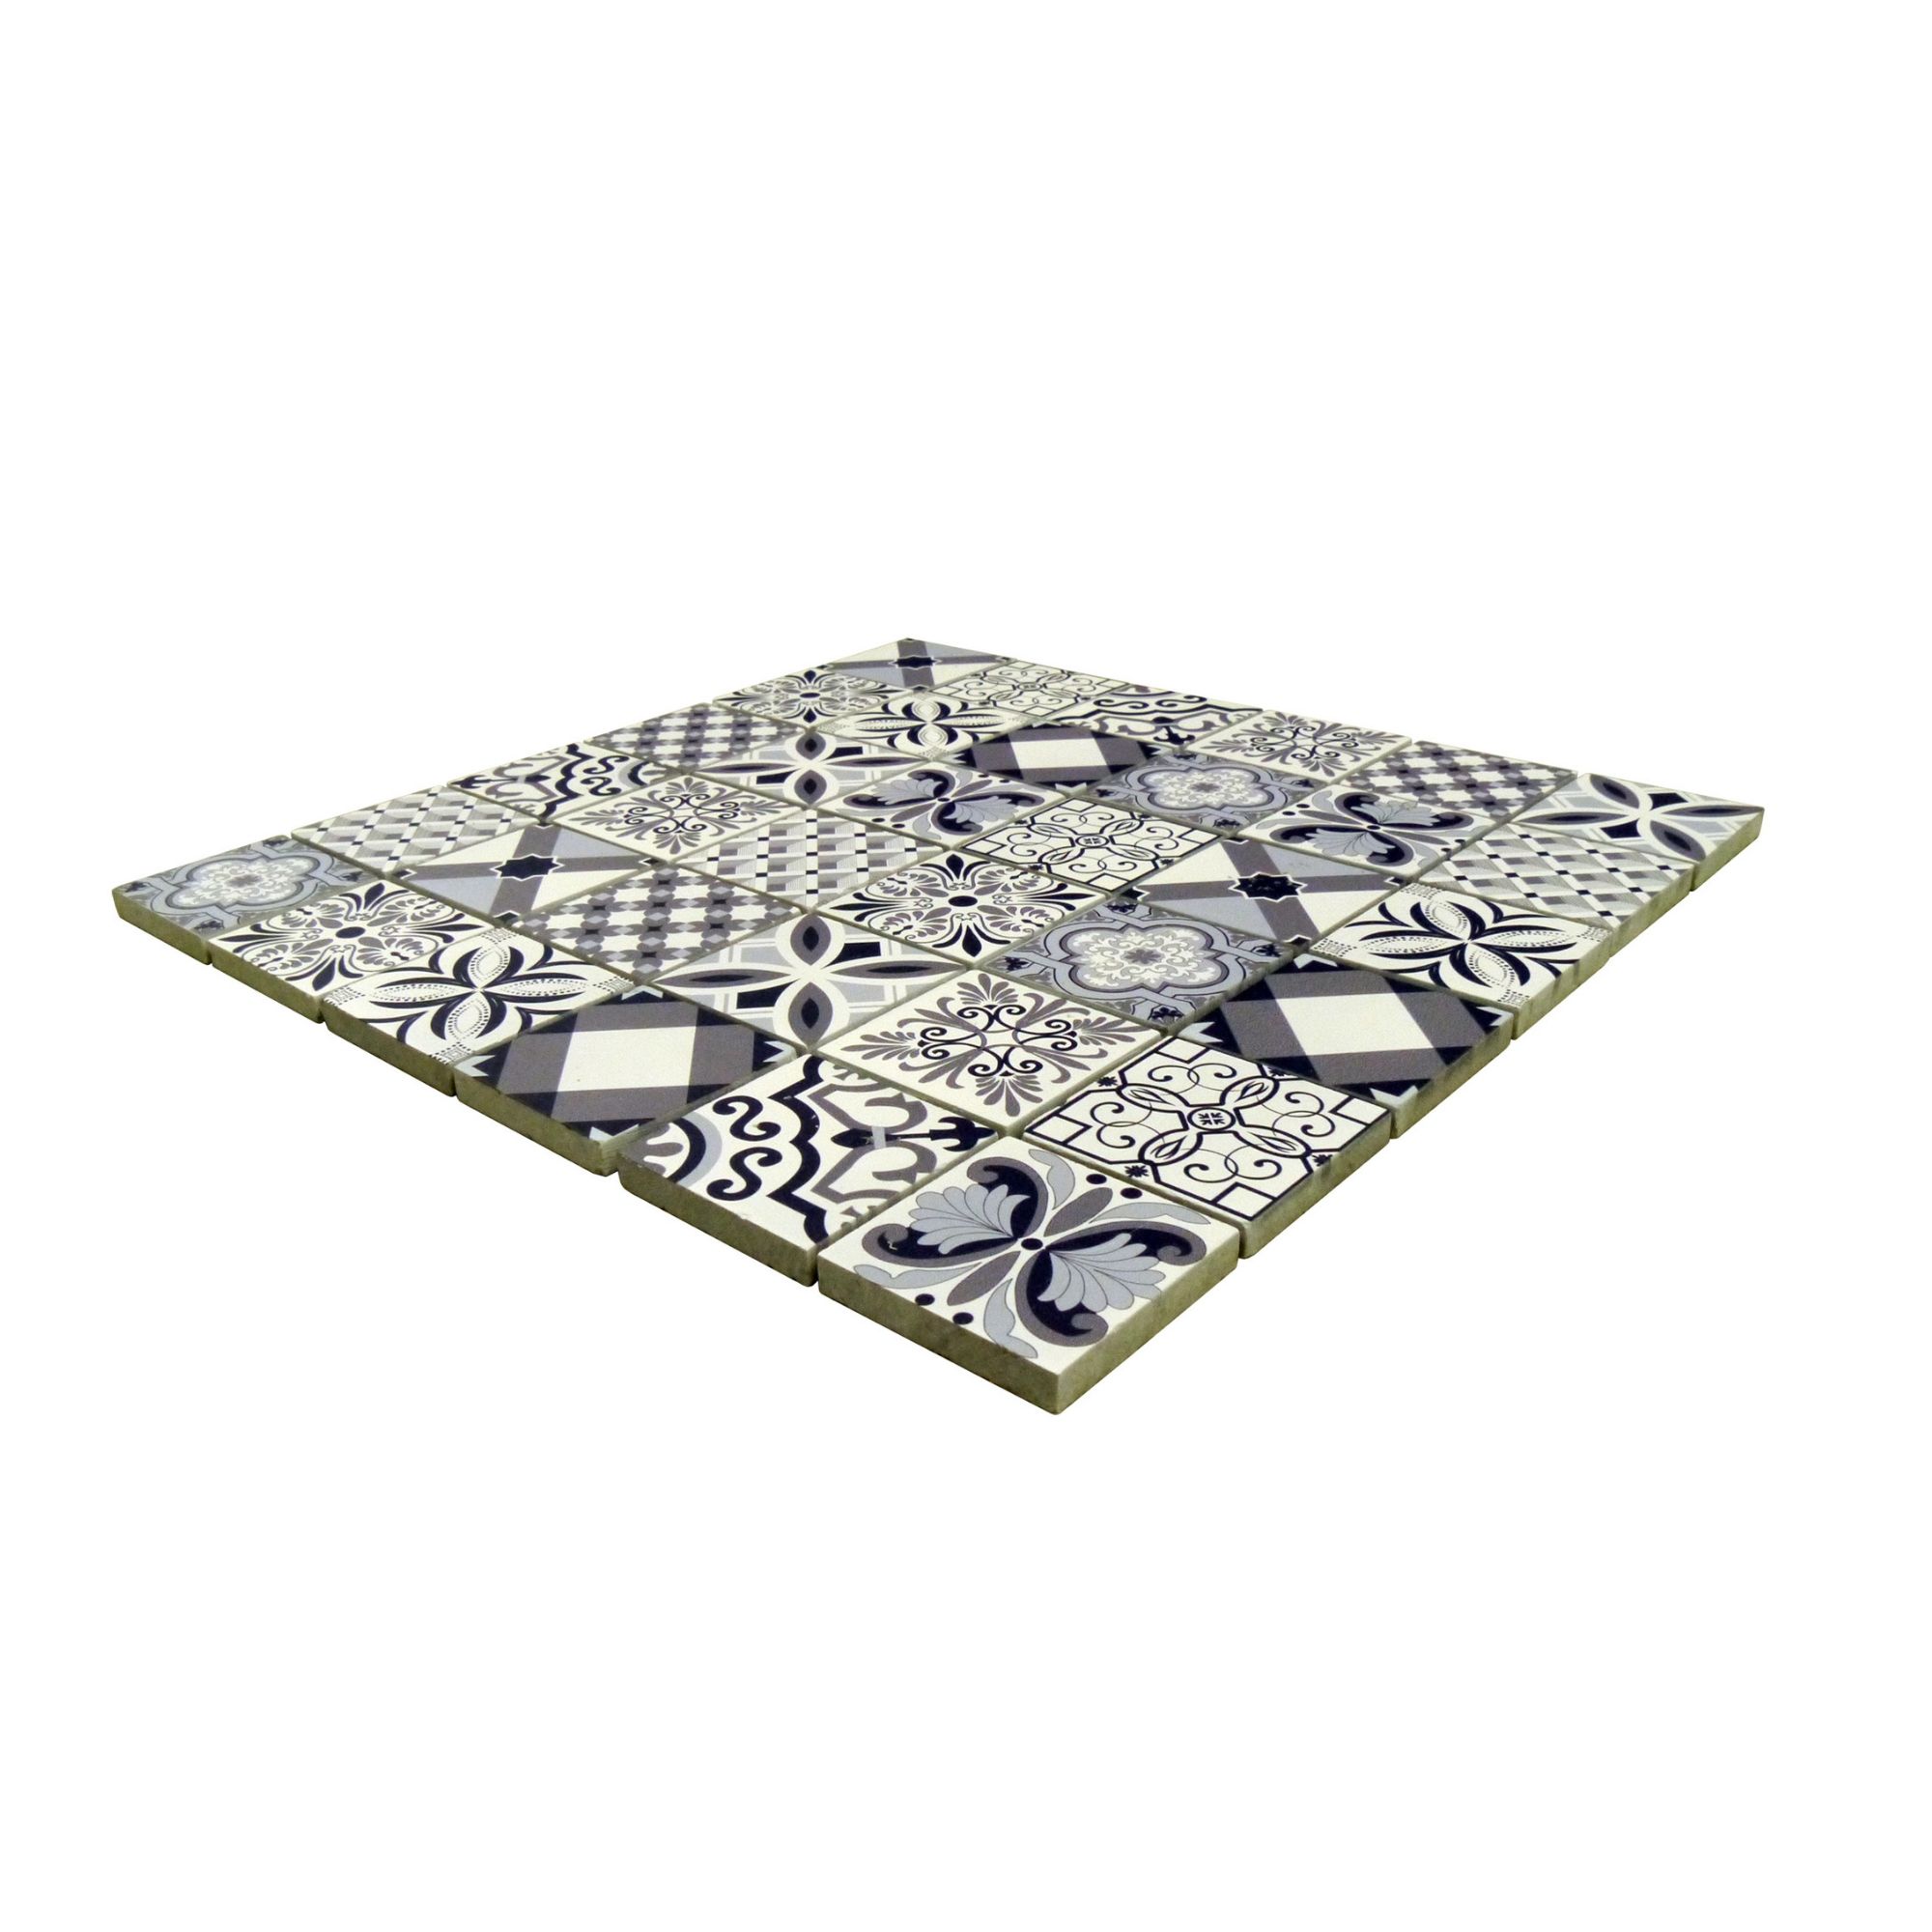 3D spiro Black & white Matt Patterned Marble Mosaic tile, (L)300mm (W)300mm